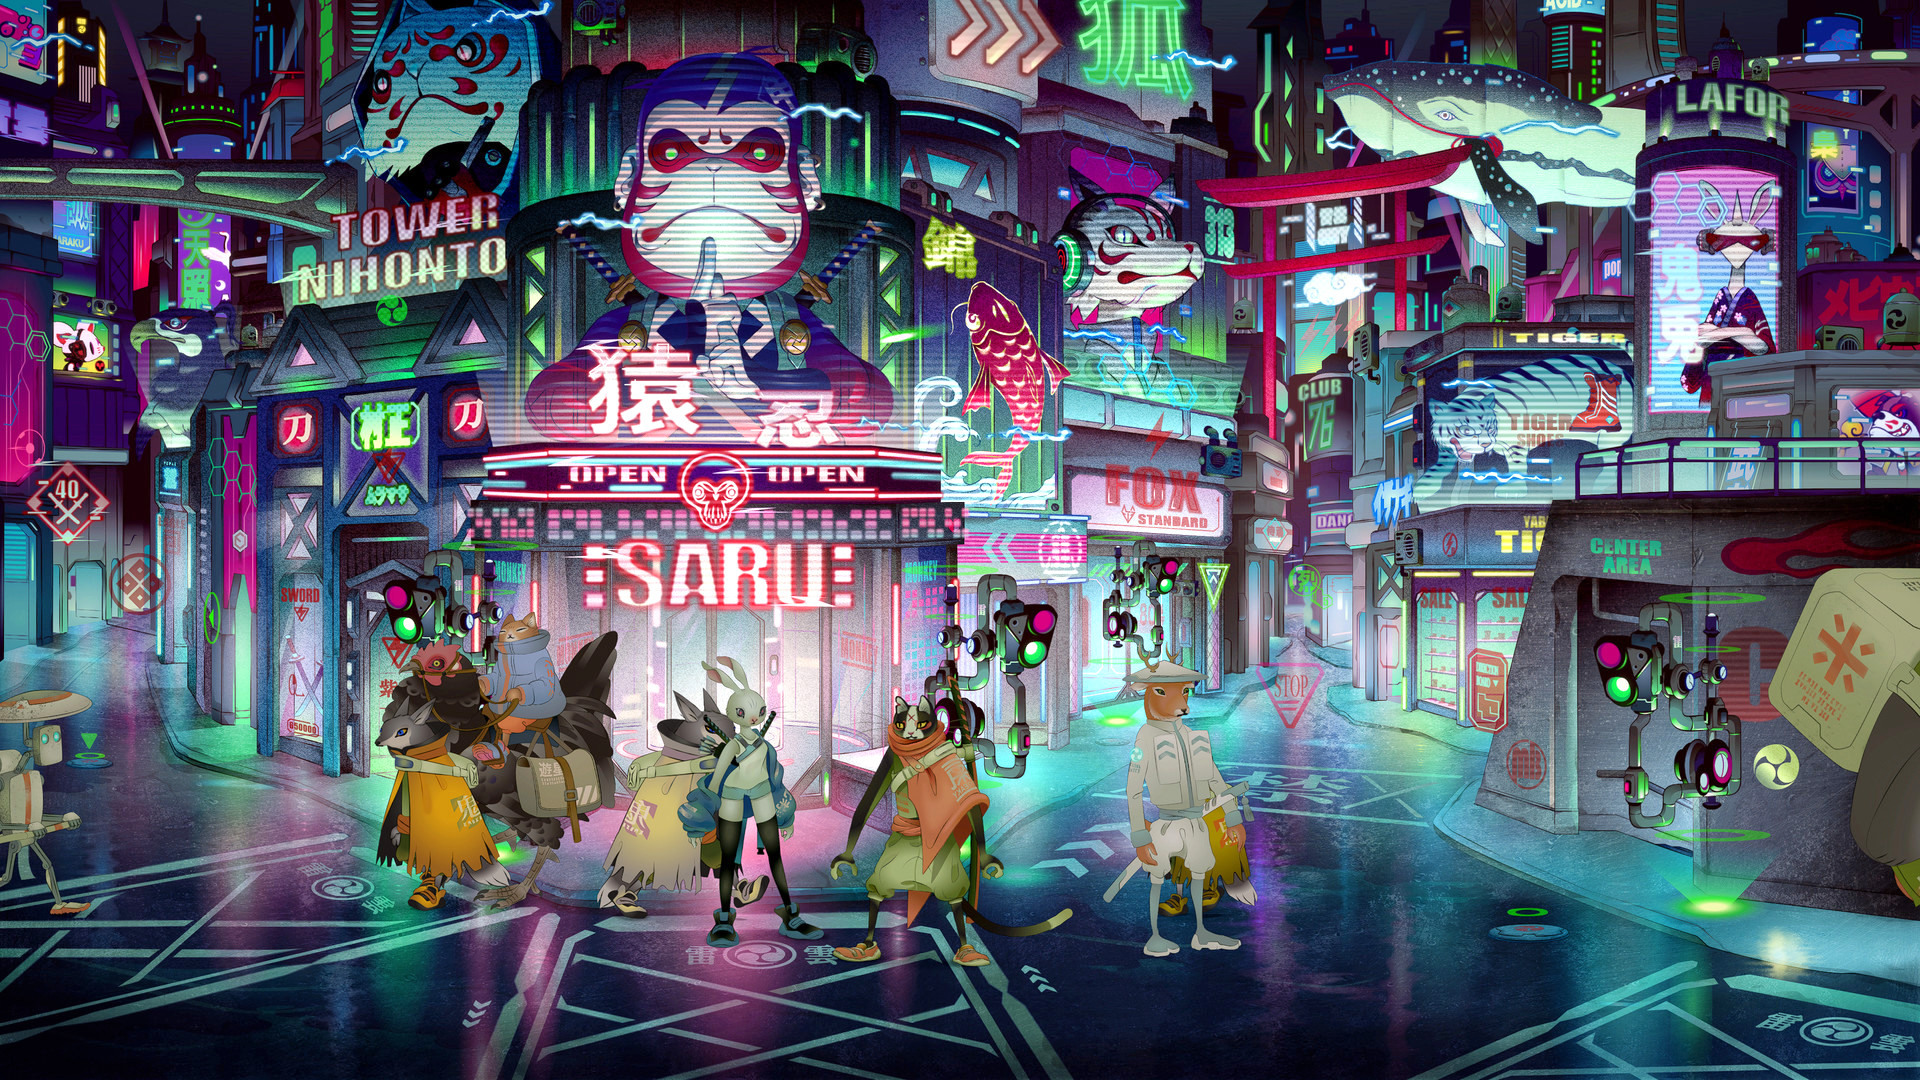 和风冒险游戏《浮世 Ukiyo》中文试玩影片公开 扮演武士猫解开谜团重返现实世界插图6